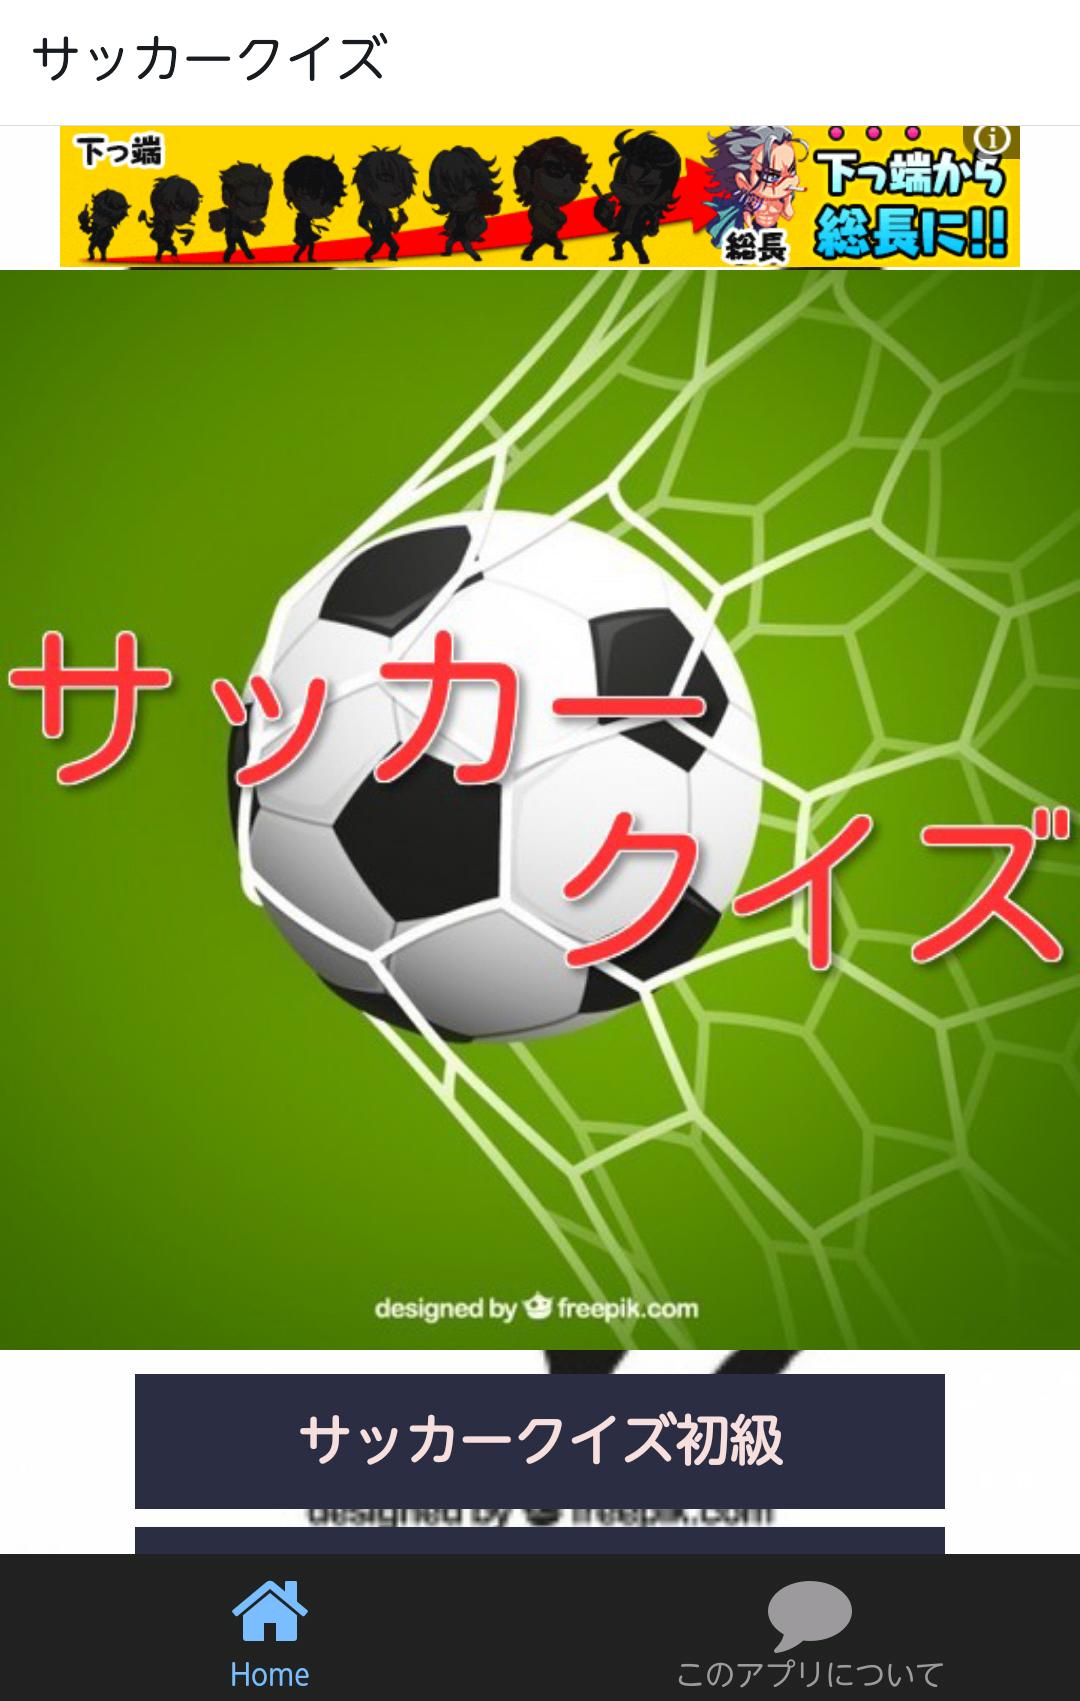 すごい サッカークイズ アプリ 美しいトップジャパン画像